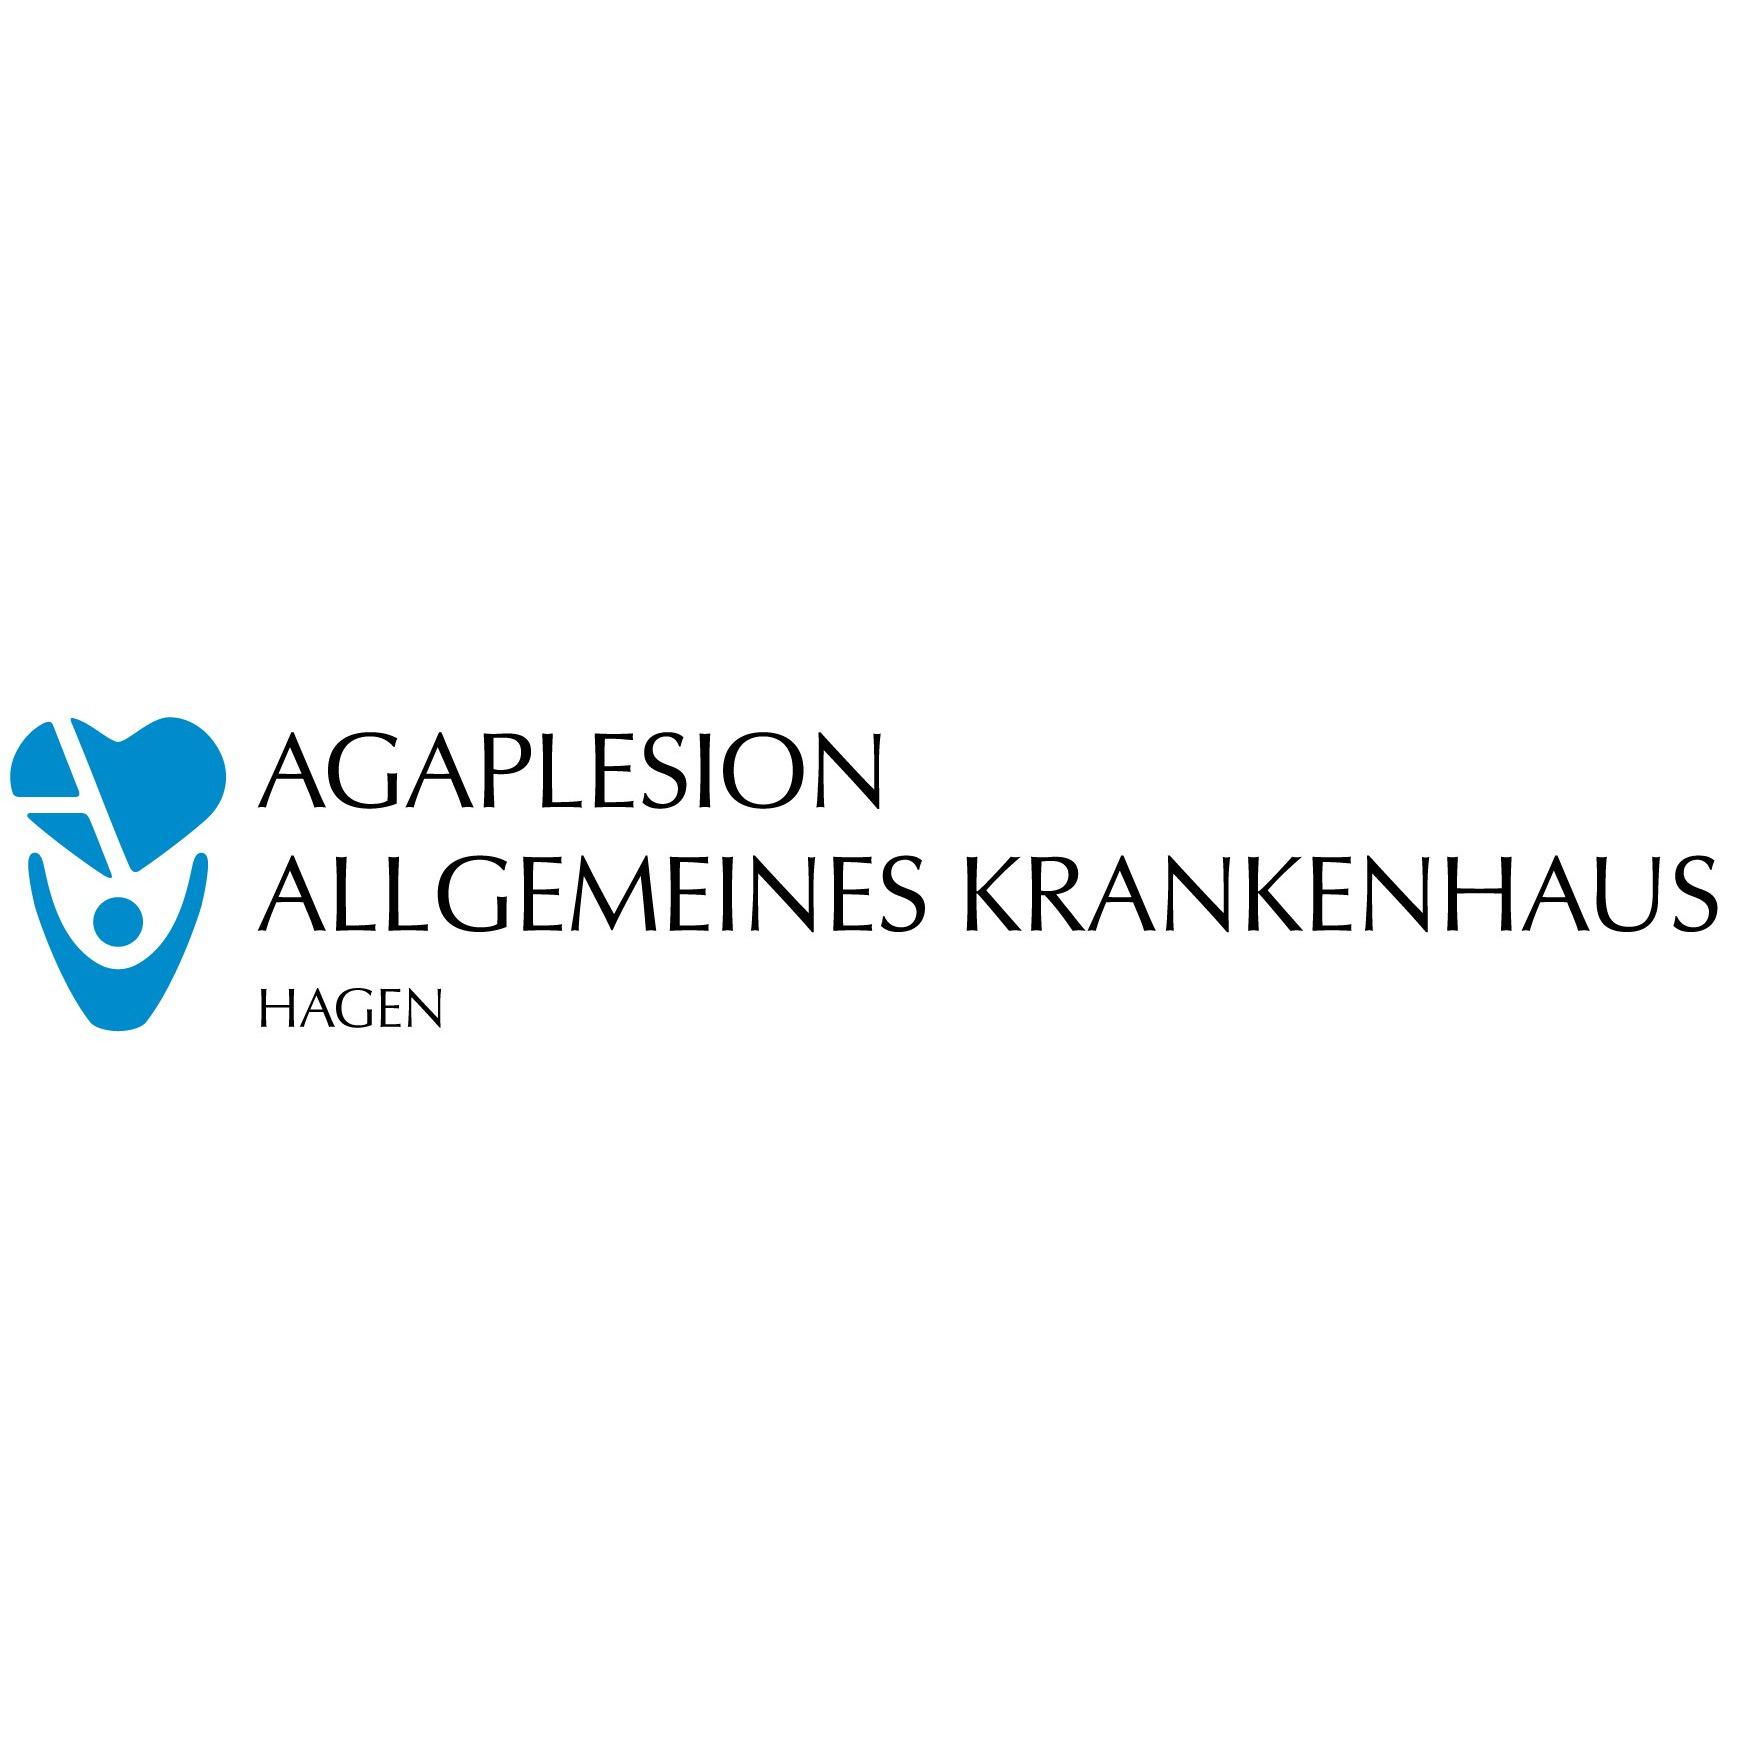 Klinik für Gynäkologie und Geburtshilfe am AGAPLESION ALLGEMEINES KRANKENHAUS HAGEN in Hagen in Westfalen - Logo